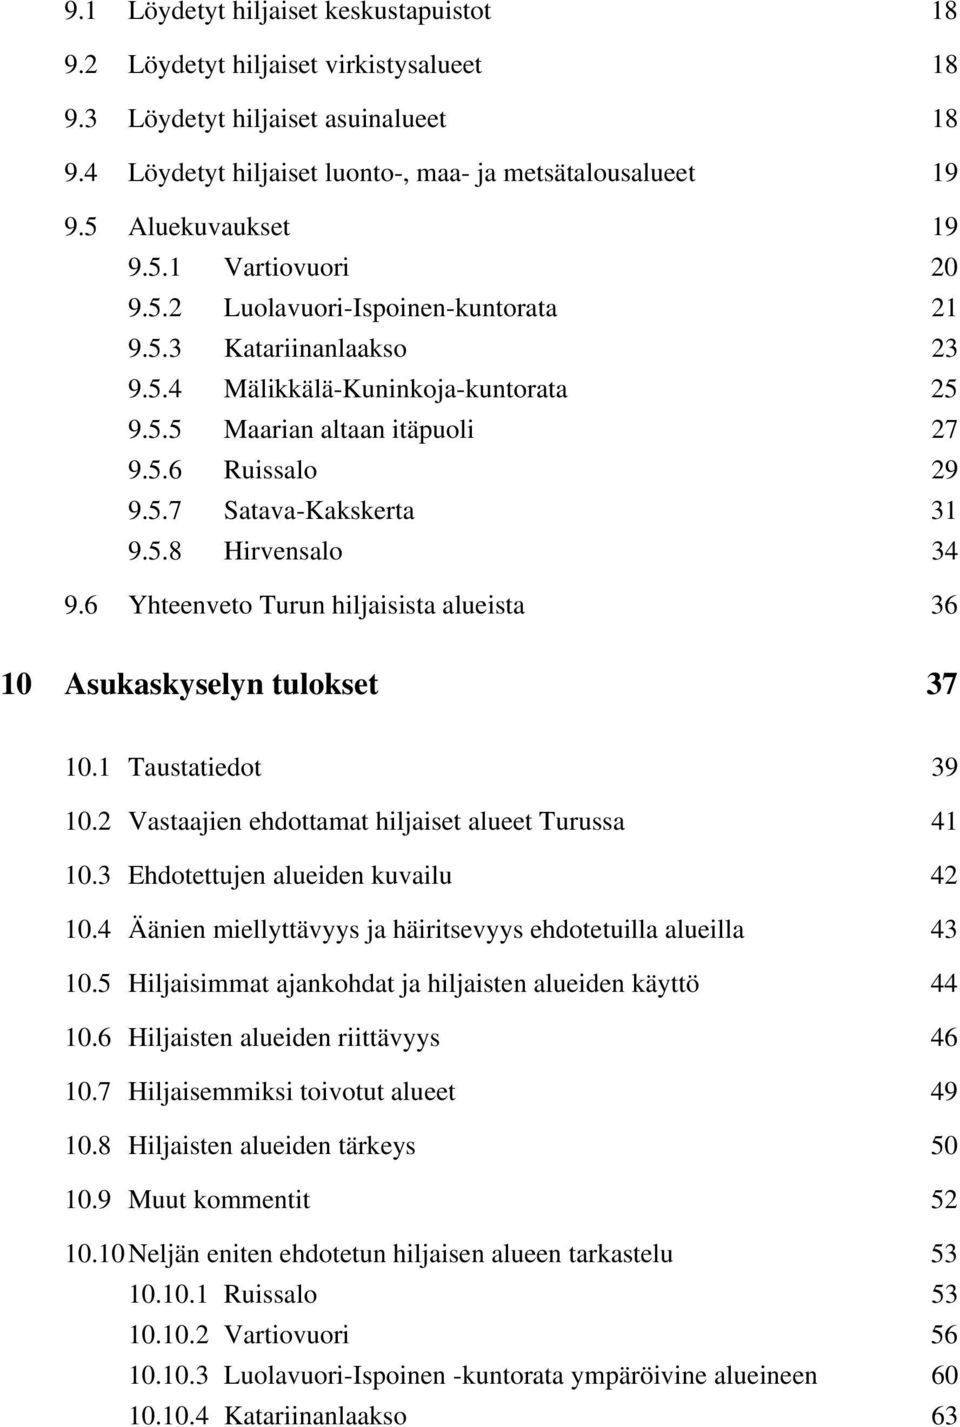 5.8 Hirvensalo 34 9.6 Yhteenveto Turun hiljaisista alueista 36 10 Asukaskyselyn tulokset 37 10.1 Taustatiedot 39 10.2 Vastaajien ehdottamat hiljaiset alueet Turussa 41 10.